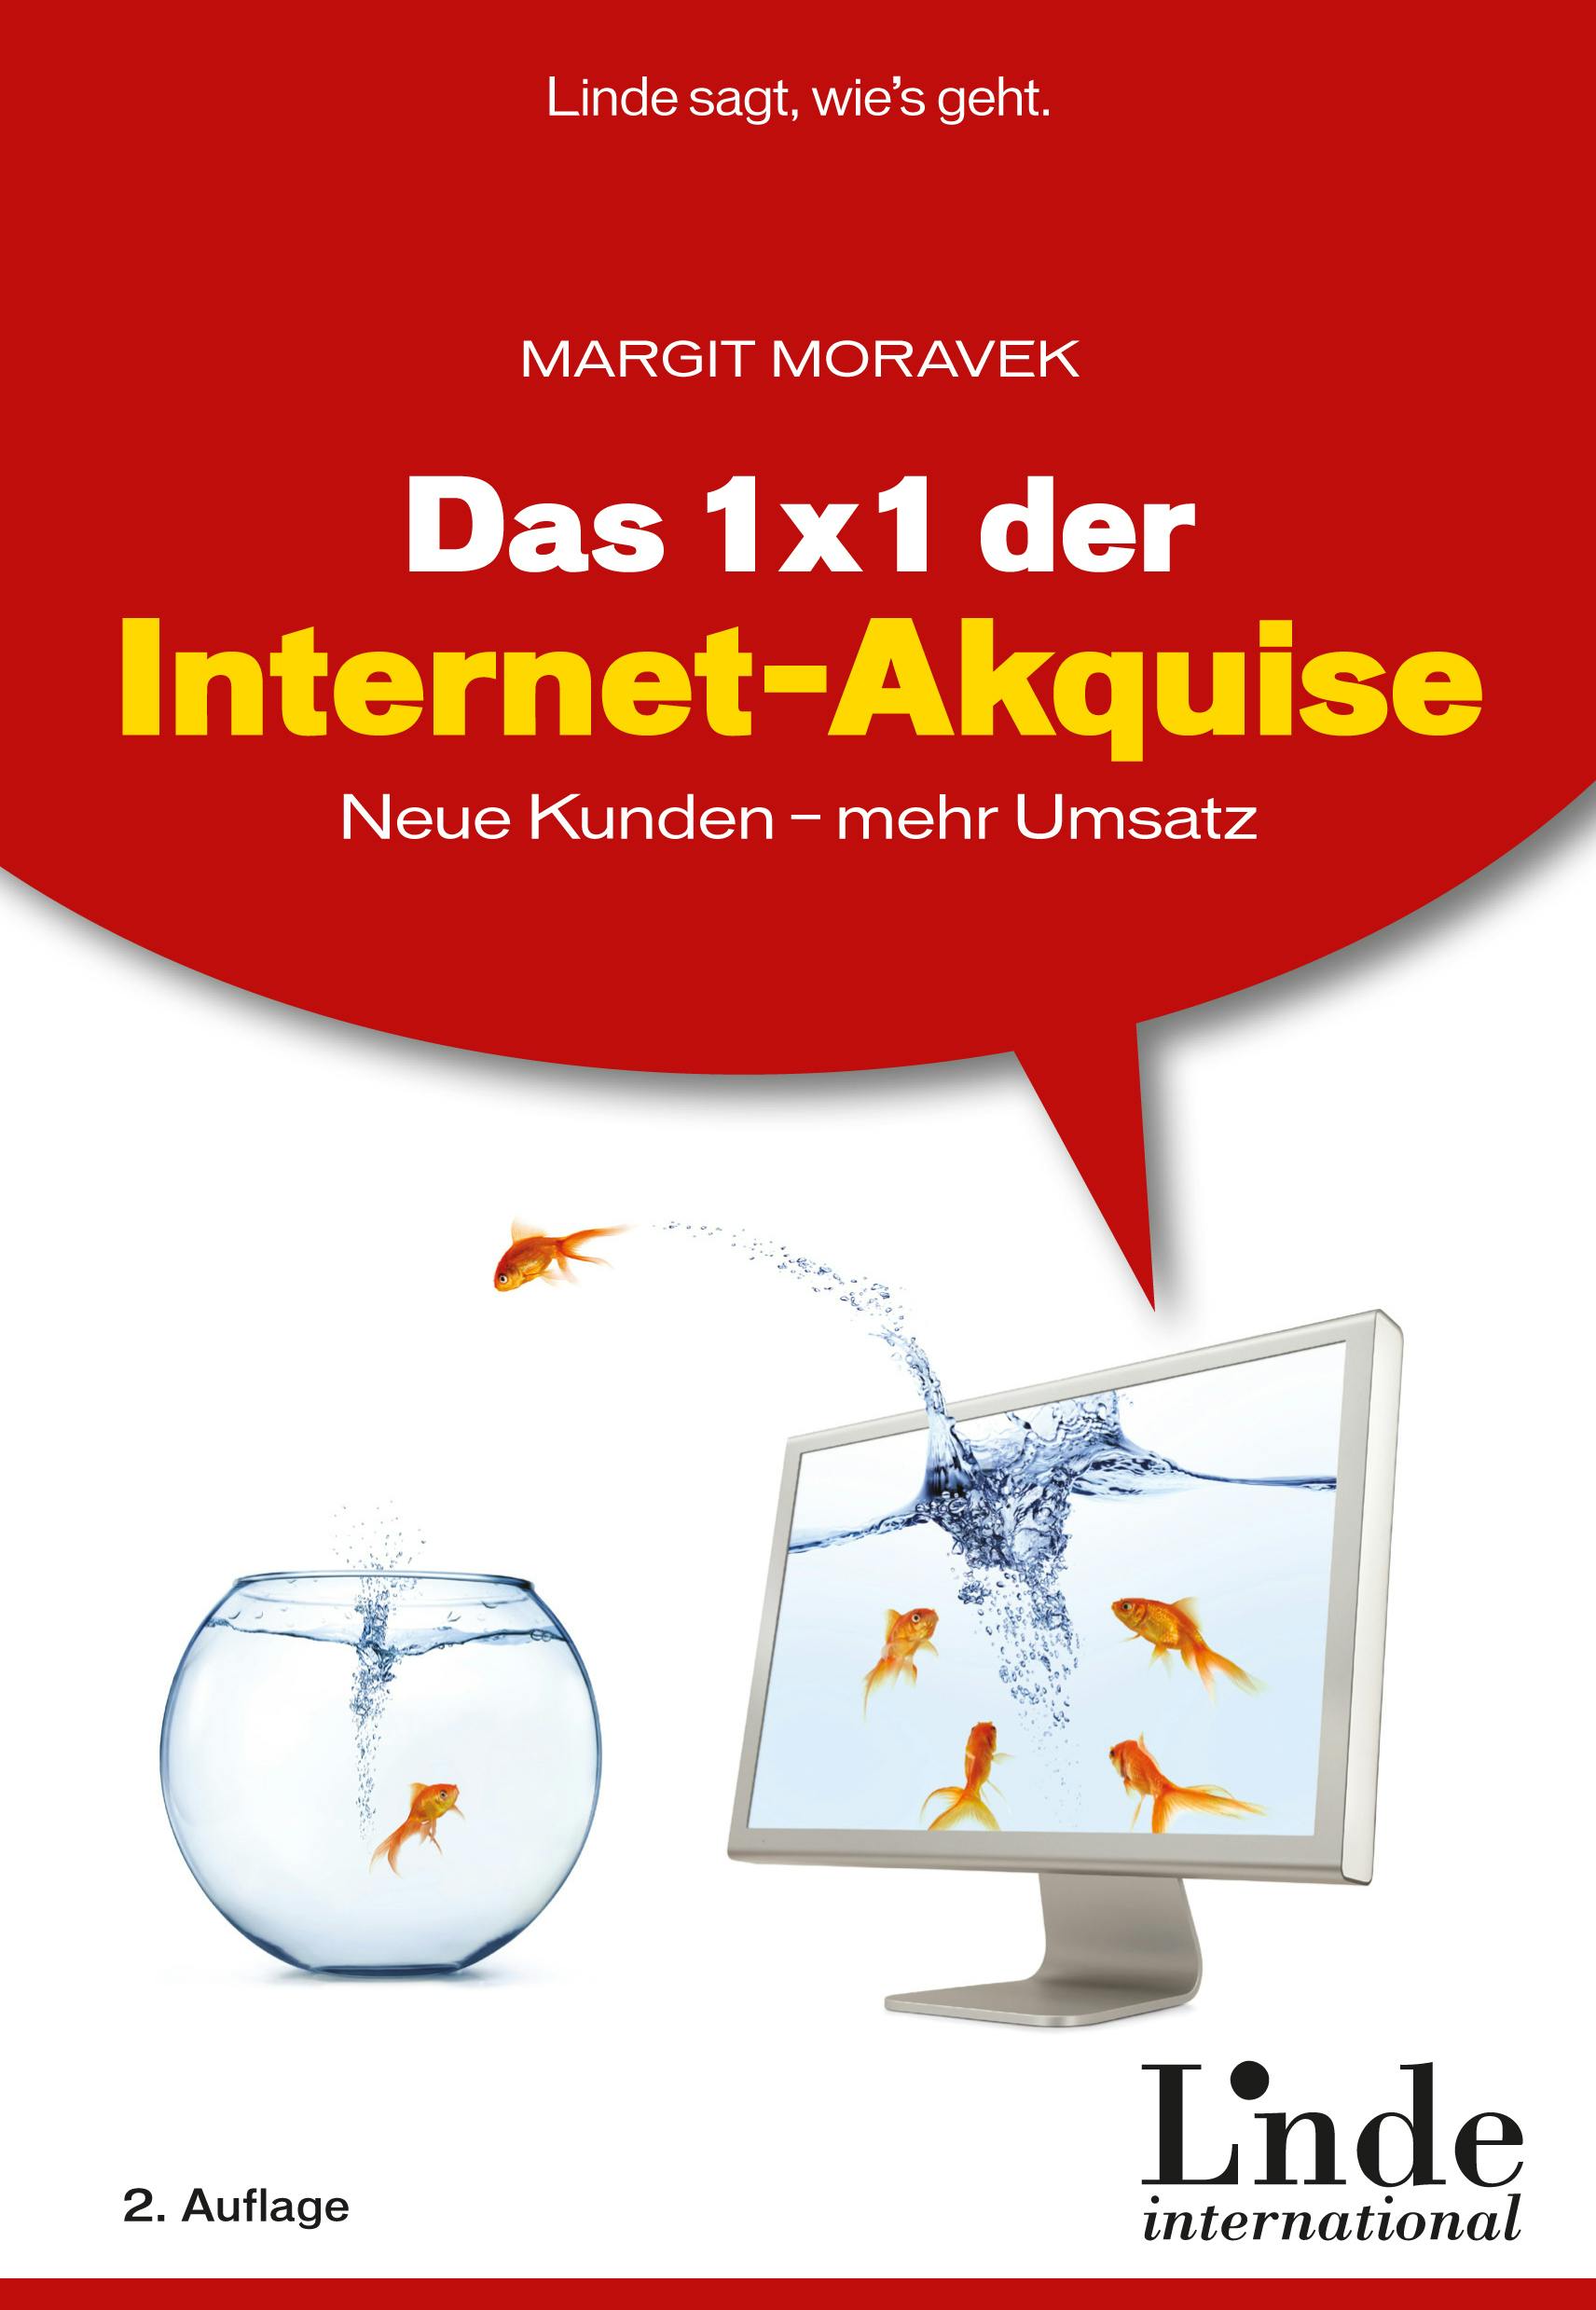 Moravek
Das 1 x 1 der Internet-Akquise
Neue Kunden - mehr Umsatz